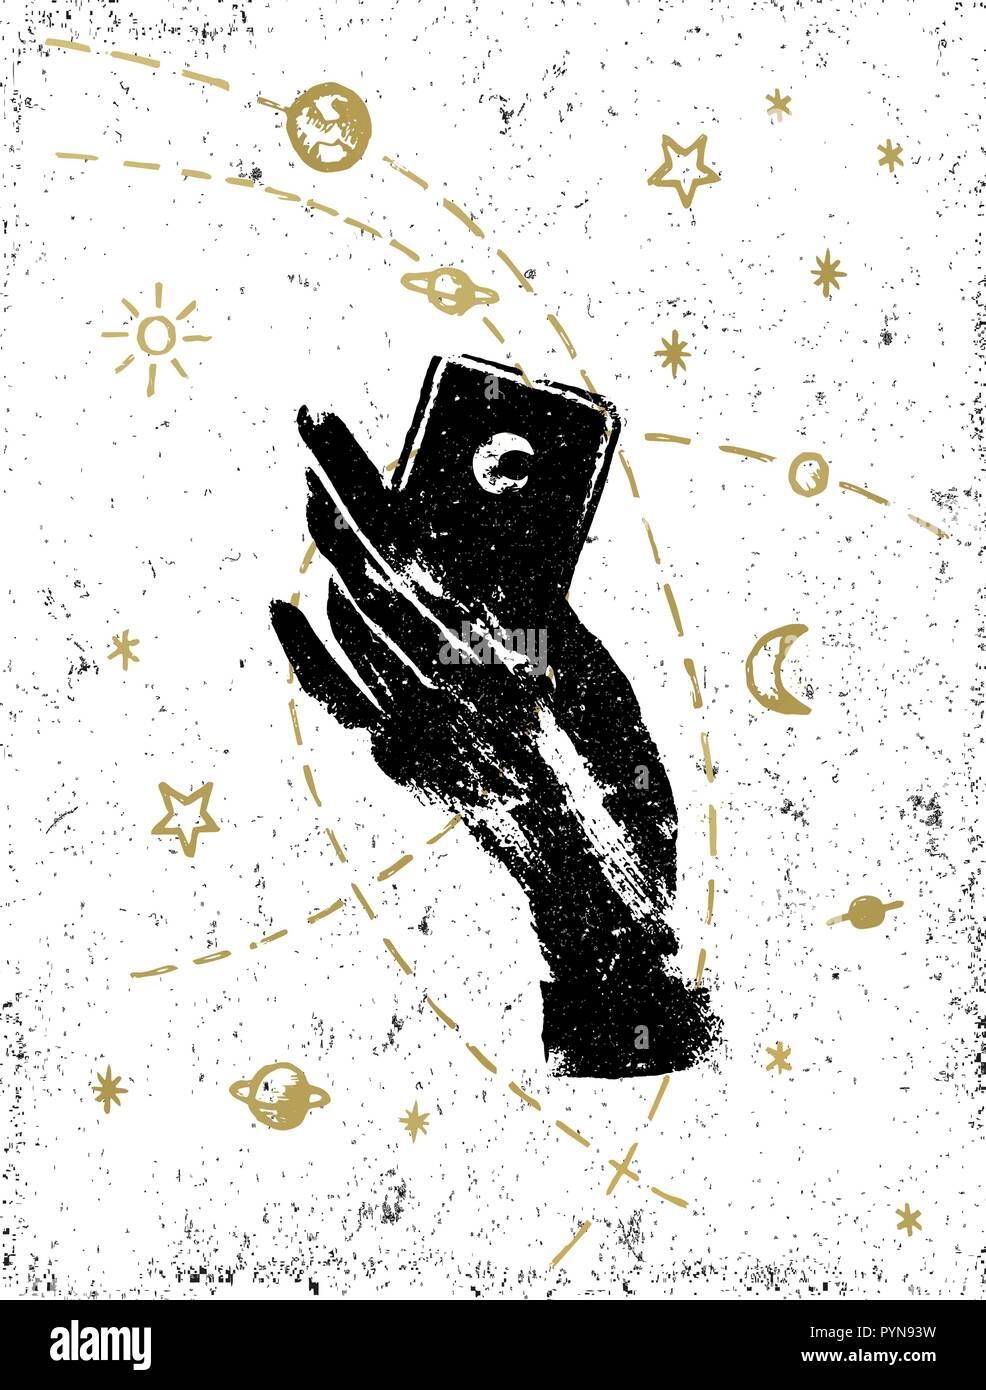 La main de sorcière noire avec cosmos symbolique illustration on white background. Autocollant, tatouage, patch ou poster print design. Illustration de Vecteur